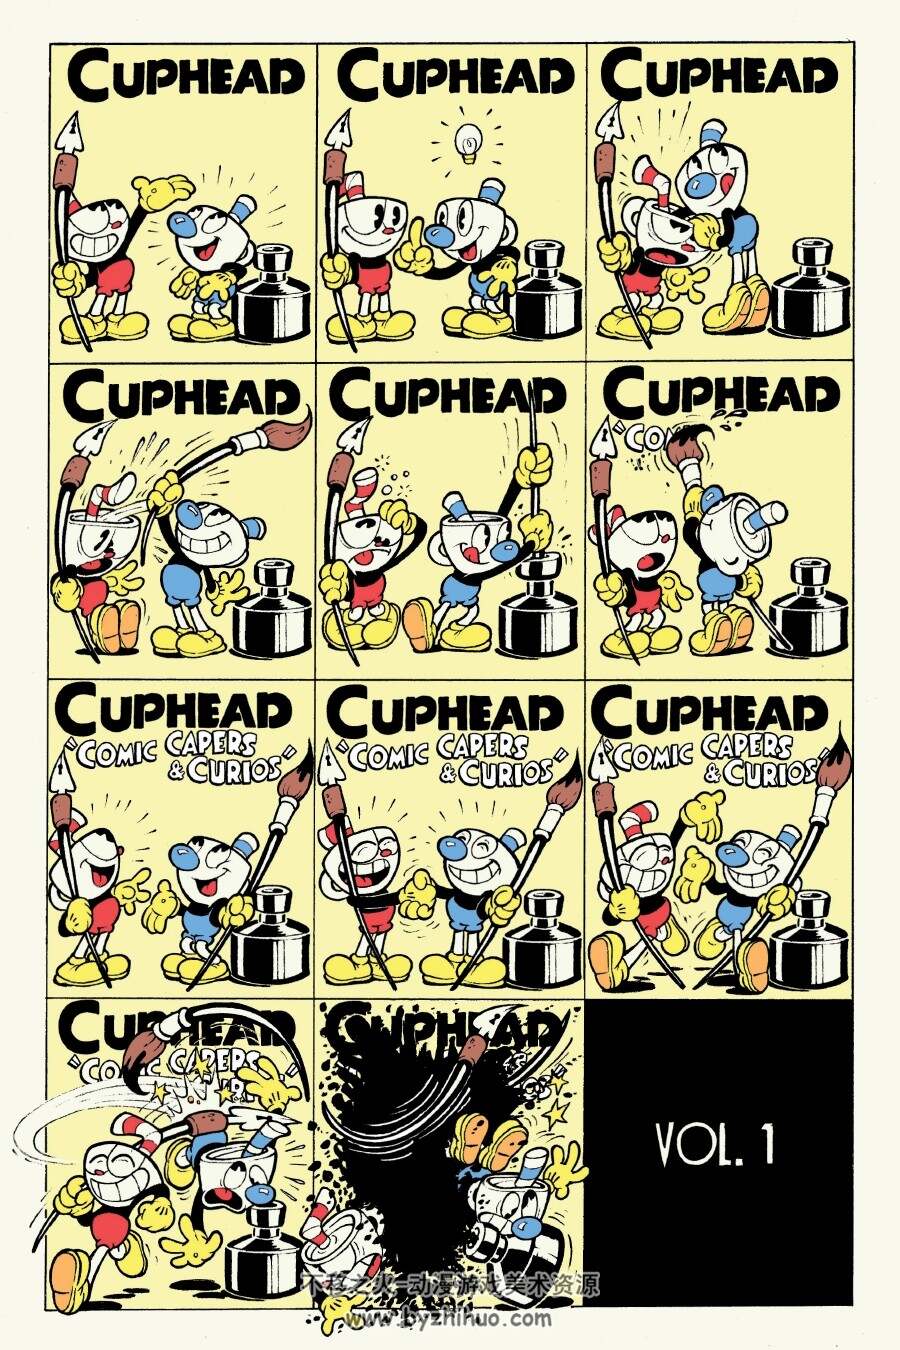 茶杯头Cuphead Comic Capers & Curios (2020) 漫画 百度网盘下载